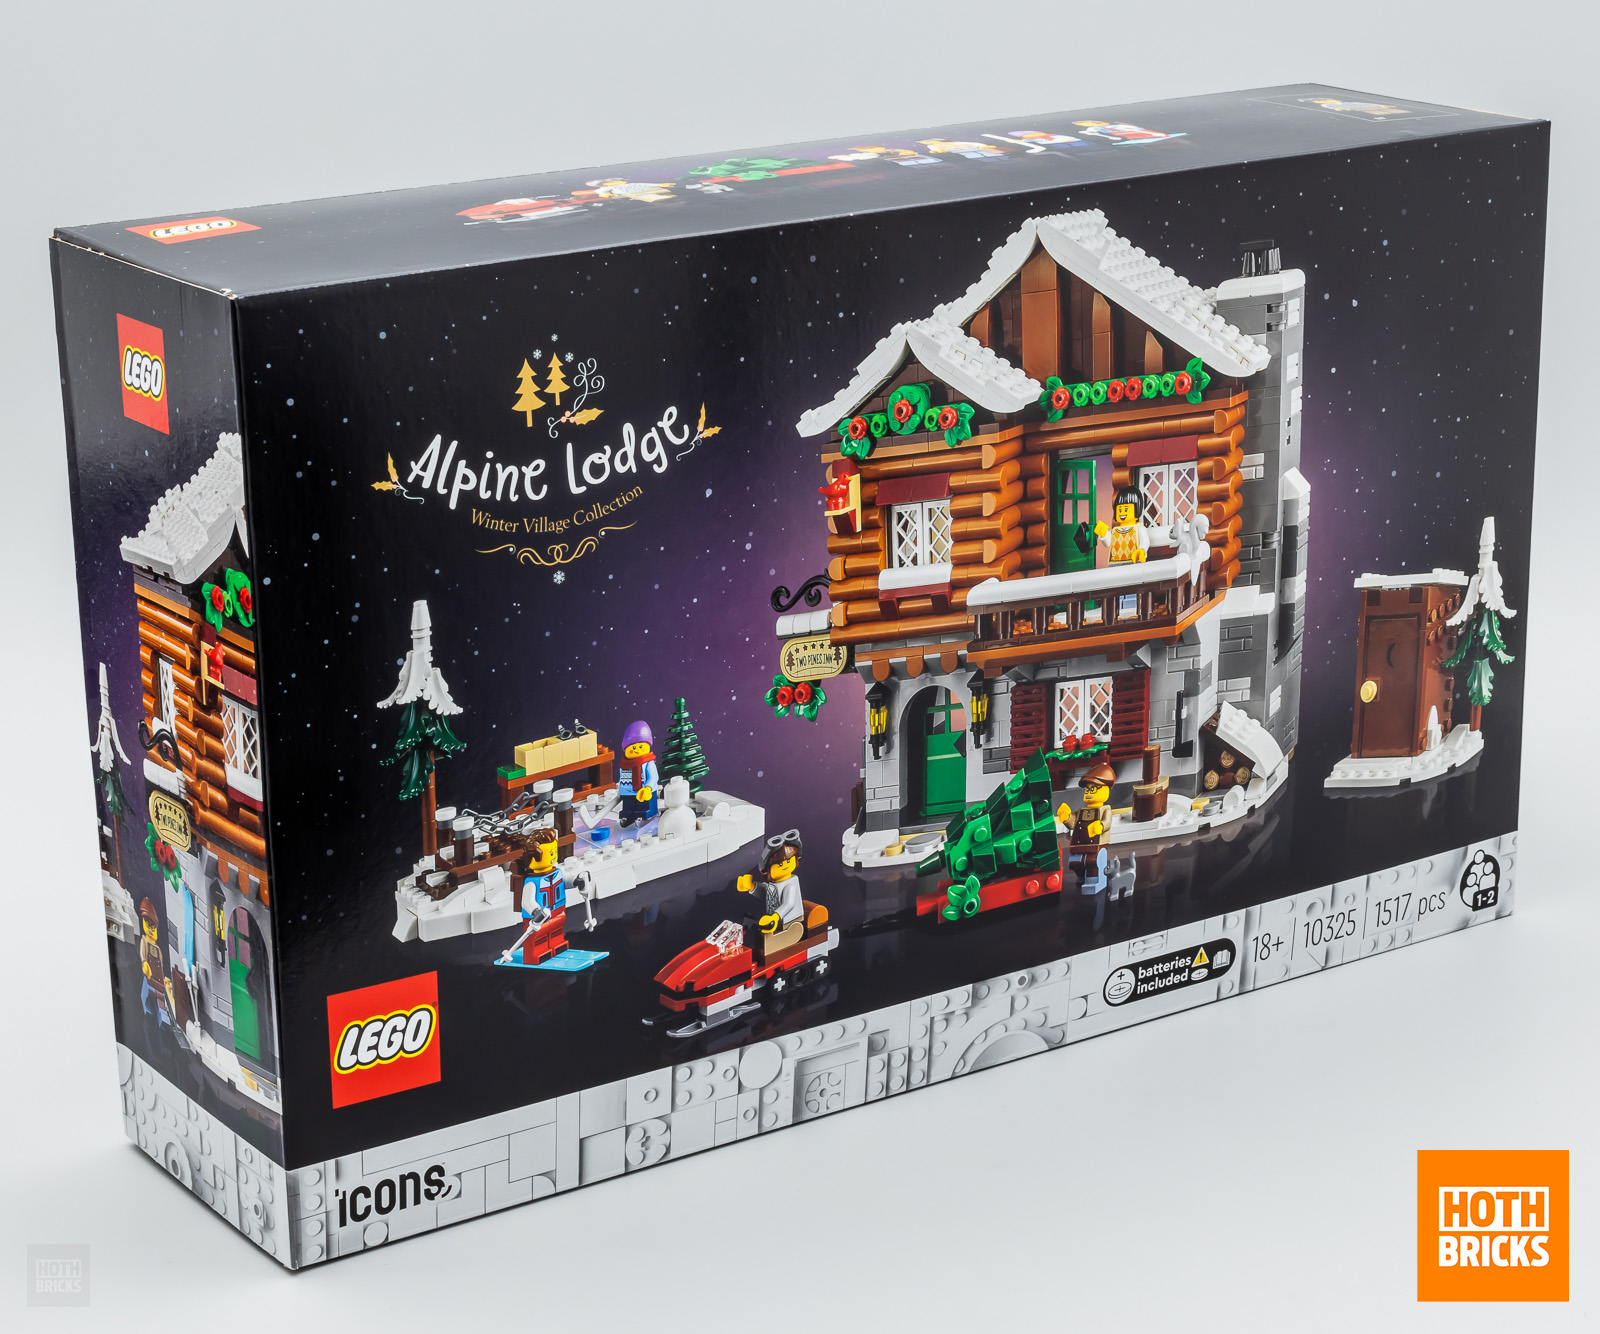 Concours un exemplaire du set LEGO ICONS 10325 Alpine Lodge à gagner